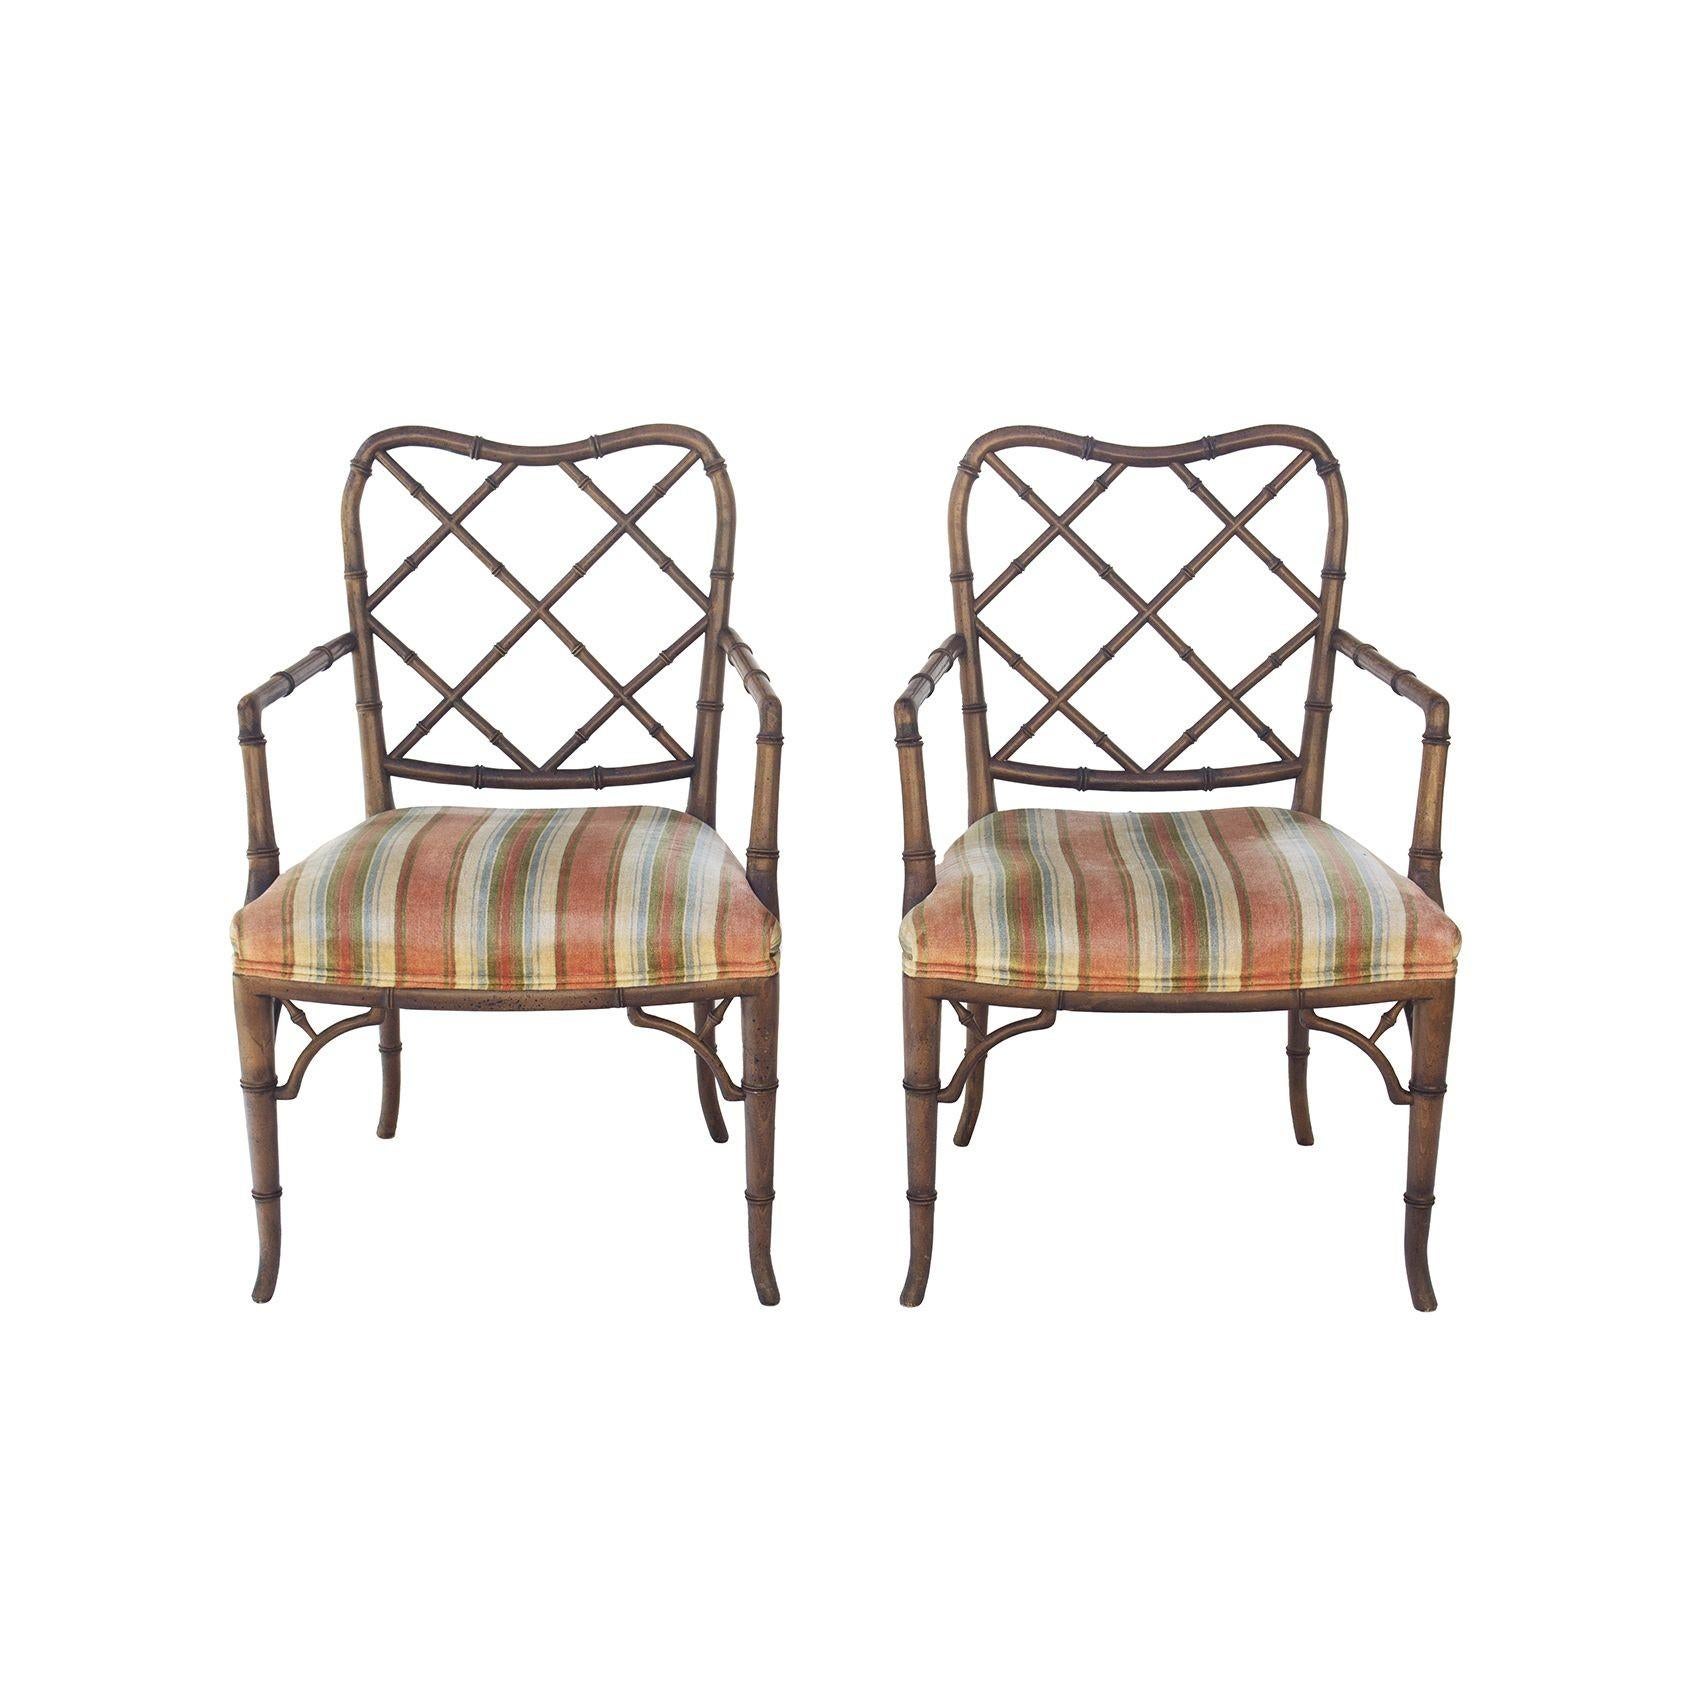 USA, 1950er Jahre
Zwei Hollywood-Regency-Sessel aus Bambusimitat. Elegante und klassische Ess- oder Beistellstühle. In der Nähe befand sich ein Muster desselben Sitzstoffs mit der Aufschrift 